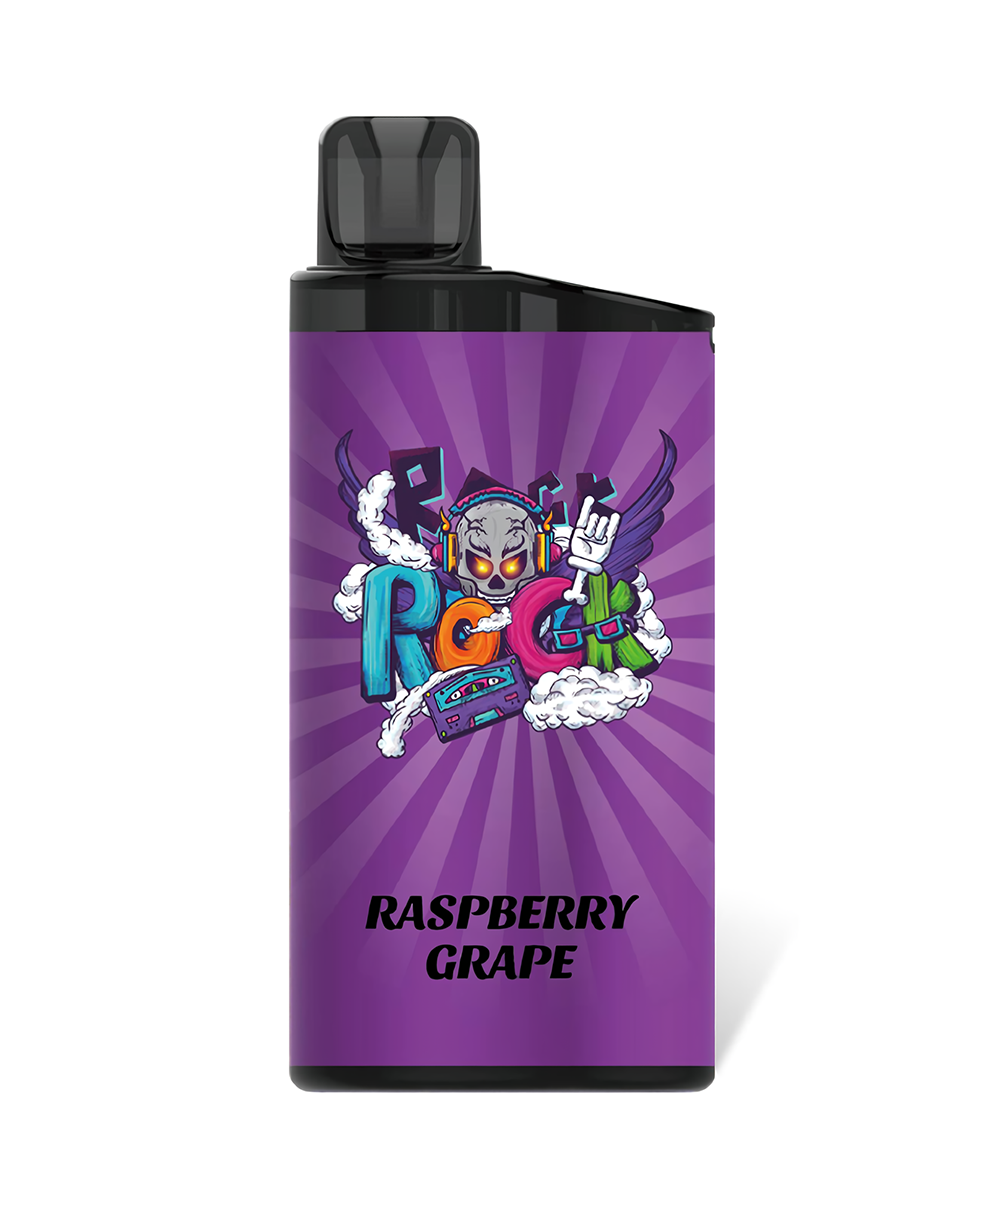 Raspberry grape